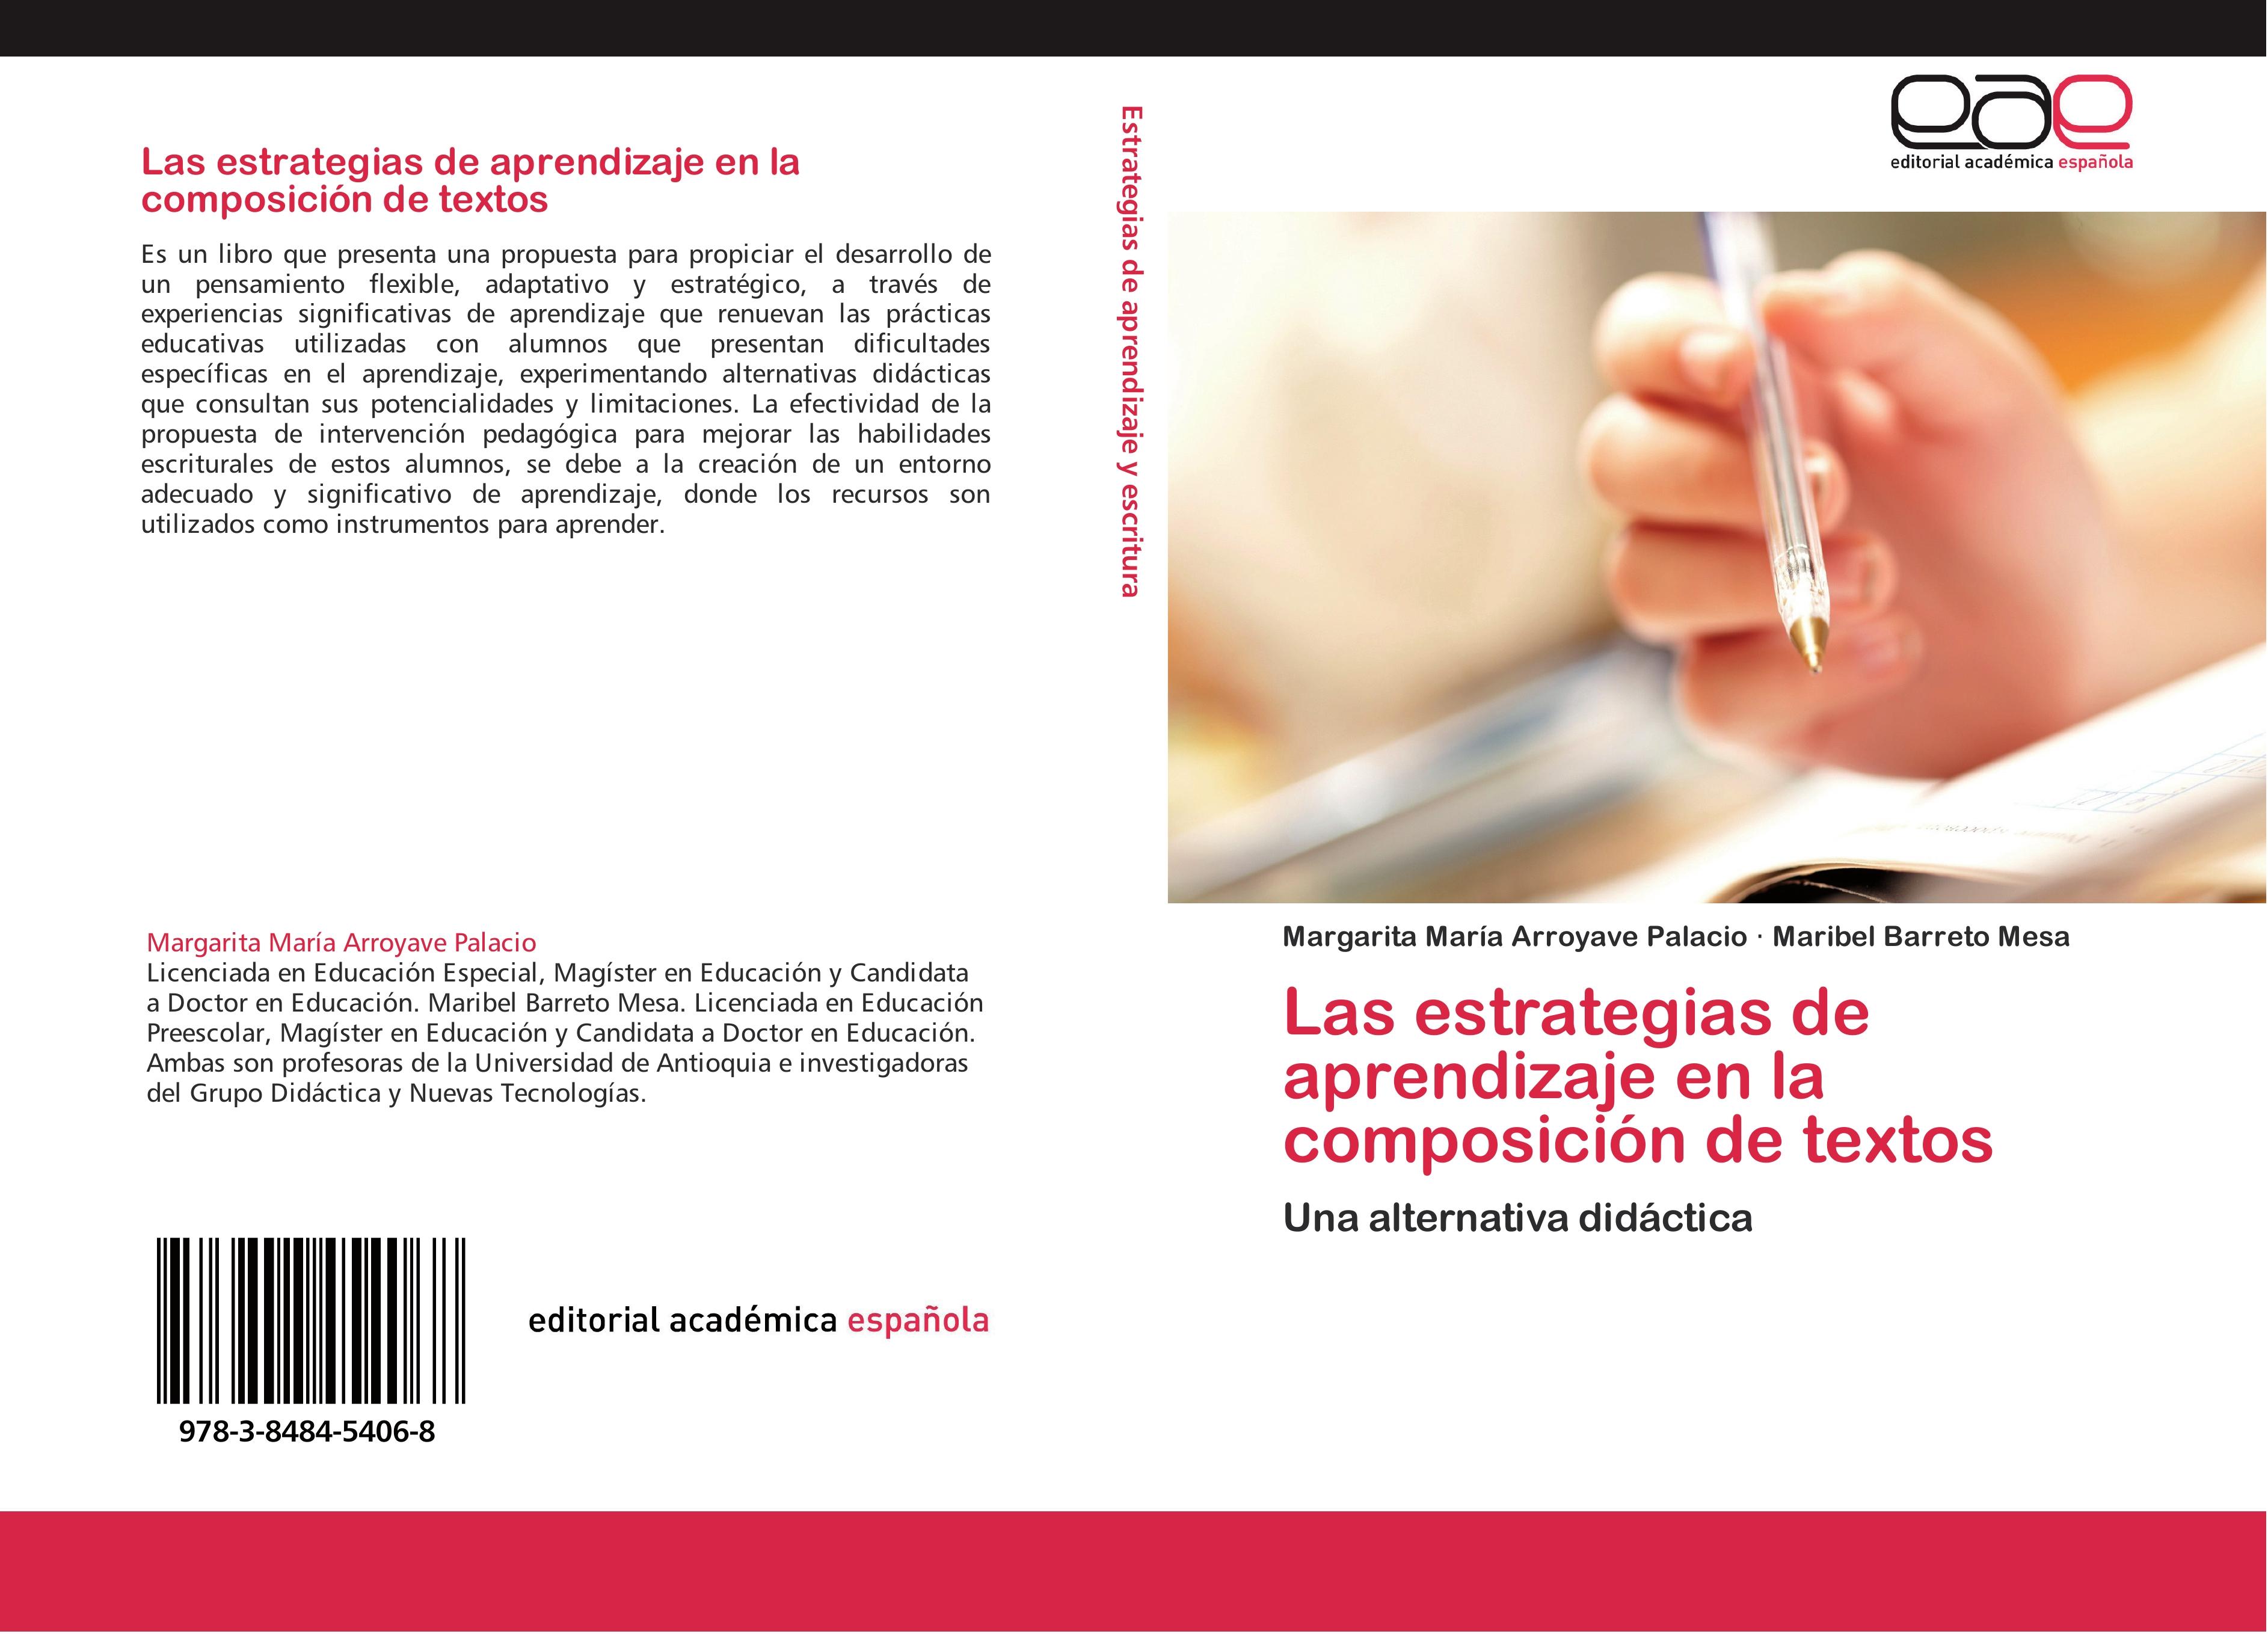 Las estrategias de aprendizaje en la composición de textos - Margarita María Arroyave Palacio Maribel Barreto Mesa